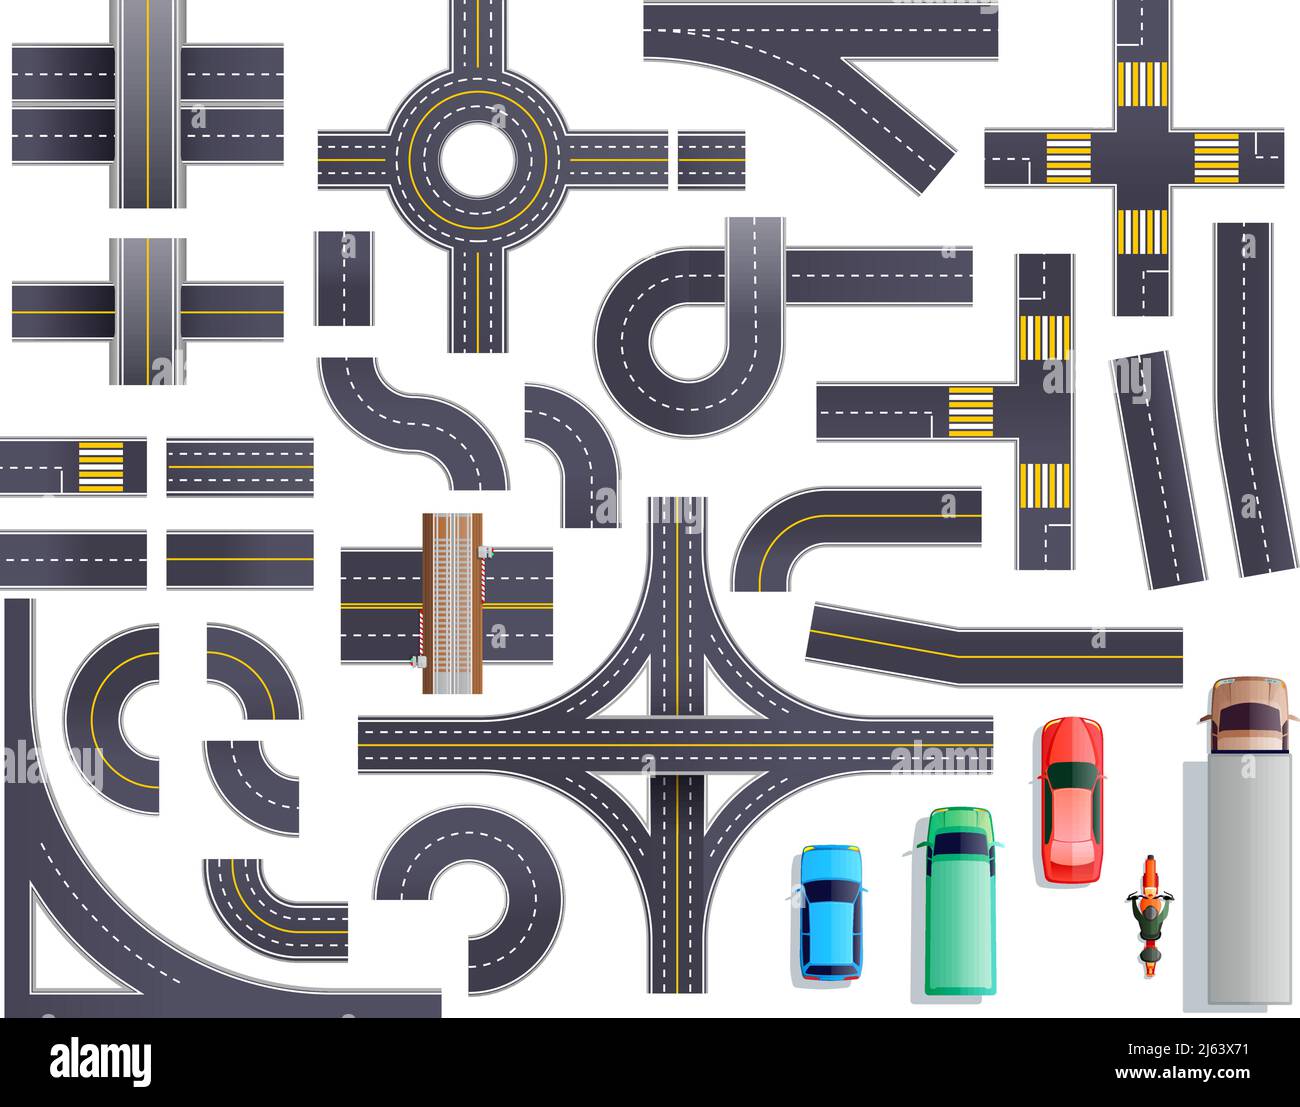 Conjunto de partes de la carretera con la carretera y marcado incluyendo intersecciones, cruces, cruces, puentes, vehículos ilustración de vectores aislados Ilustración del Vector